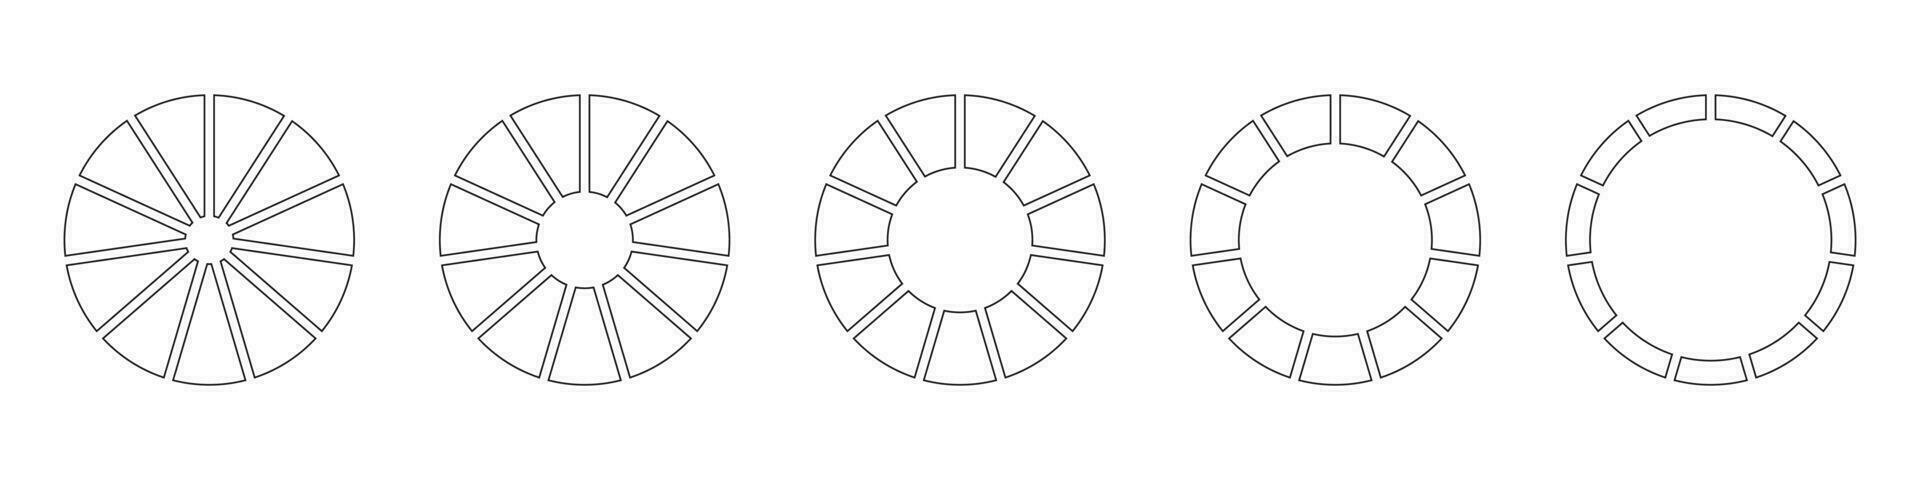 wielen ronde verdeeld in tien secties. schets donut grafieken of taarten gesegmenteerd Aan 11 Gelijk onderdelen. diagrammen infographic set. cirkel sectie diagram lijn kunst. taart tabel pictogrammen. meetkundig vector elementen.